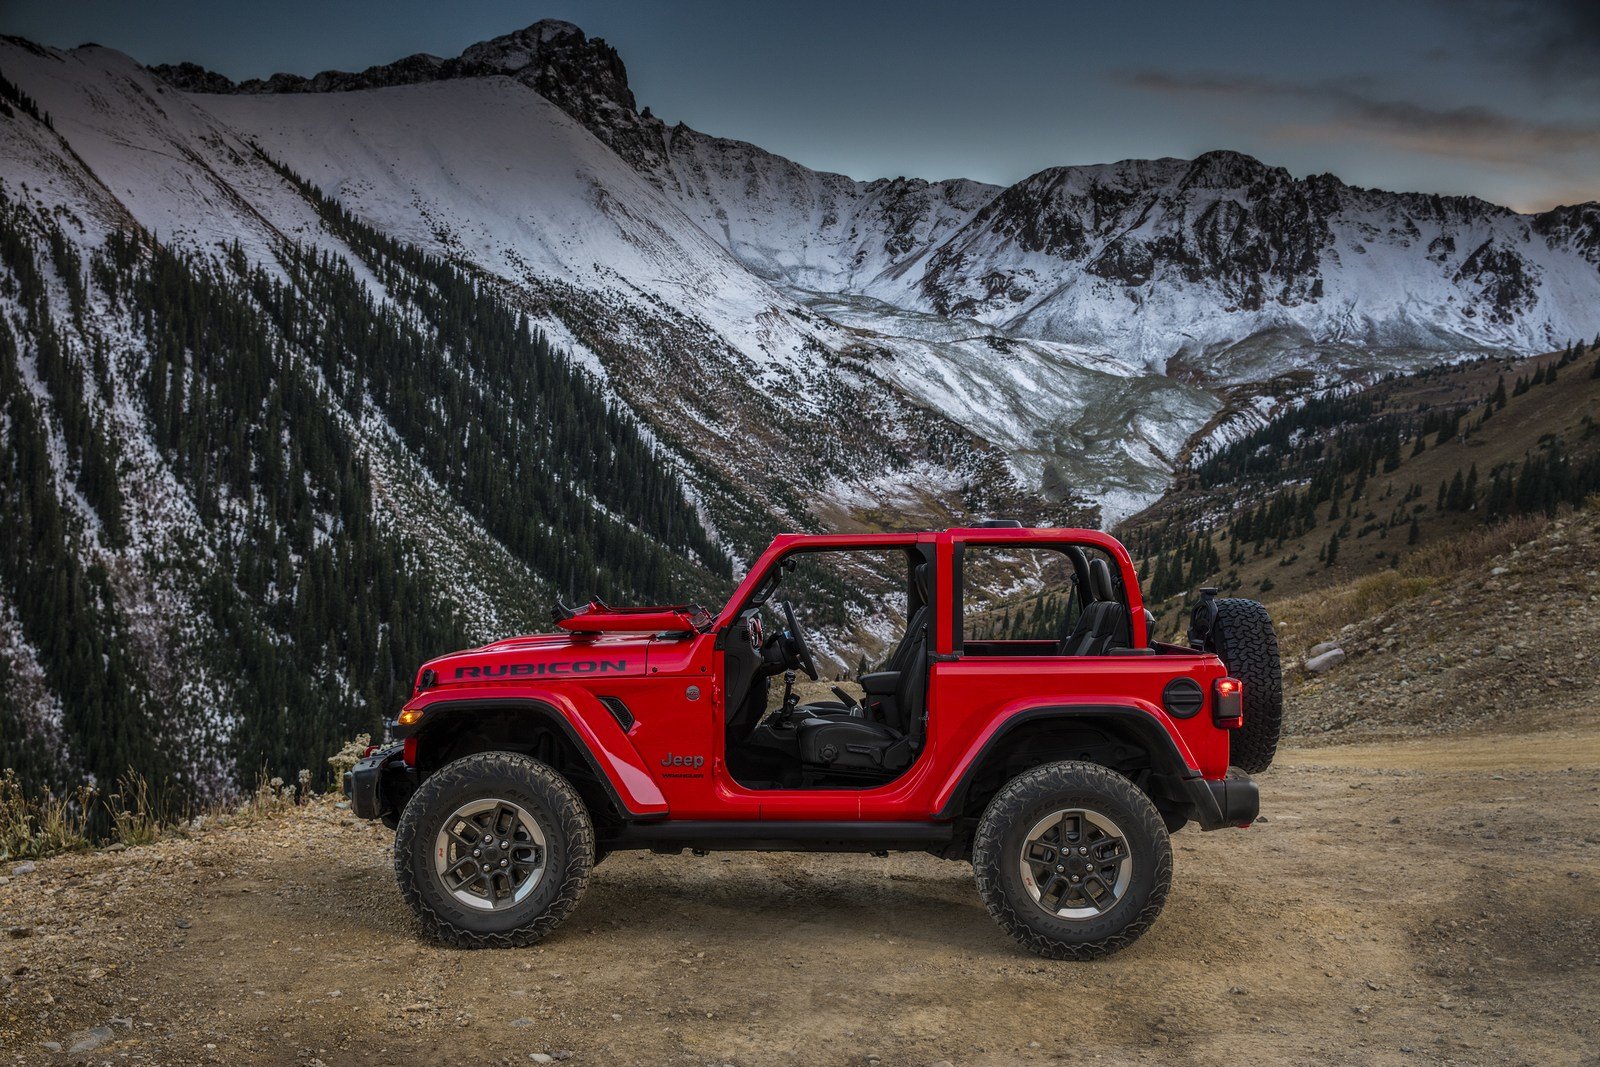 První snímky nového off-roadu Jeep Wrangler